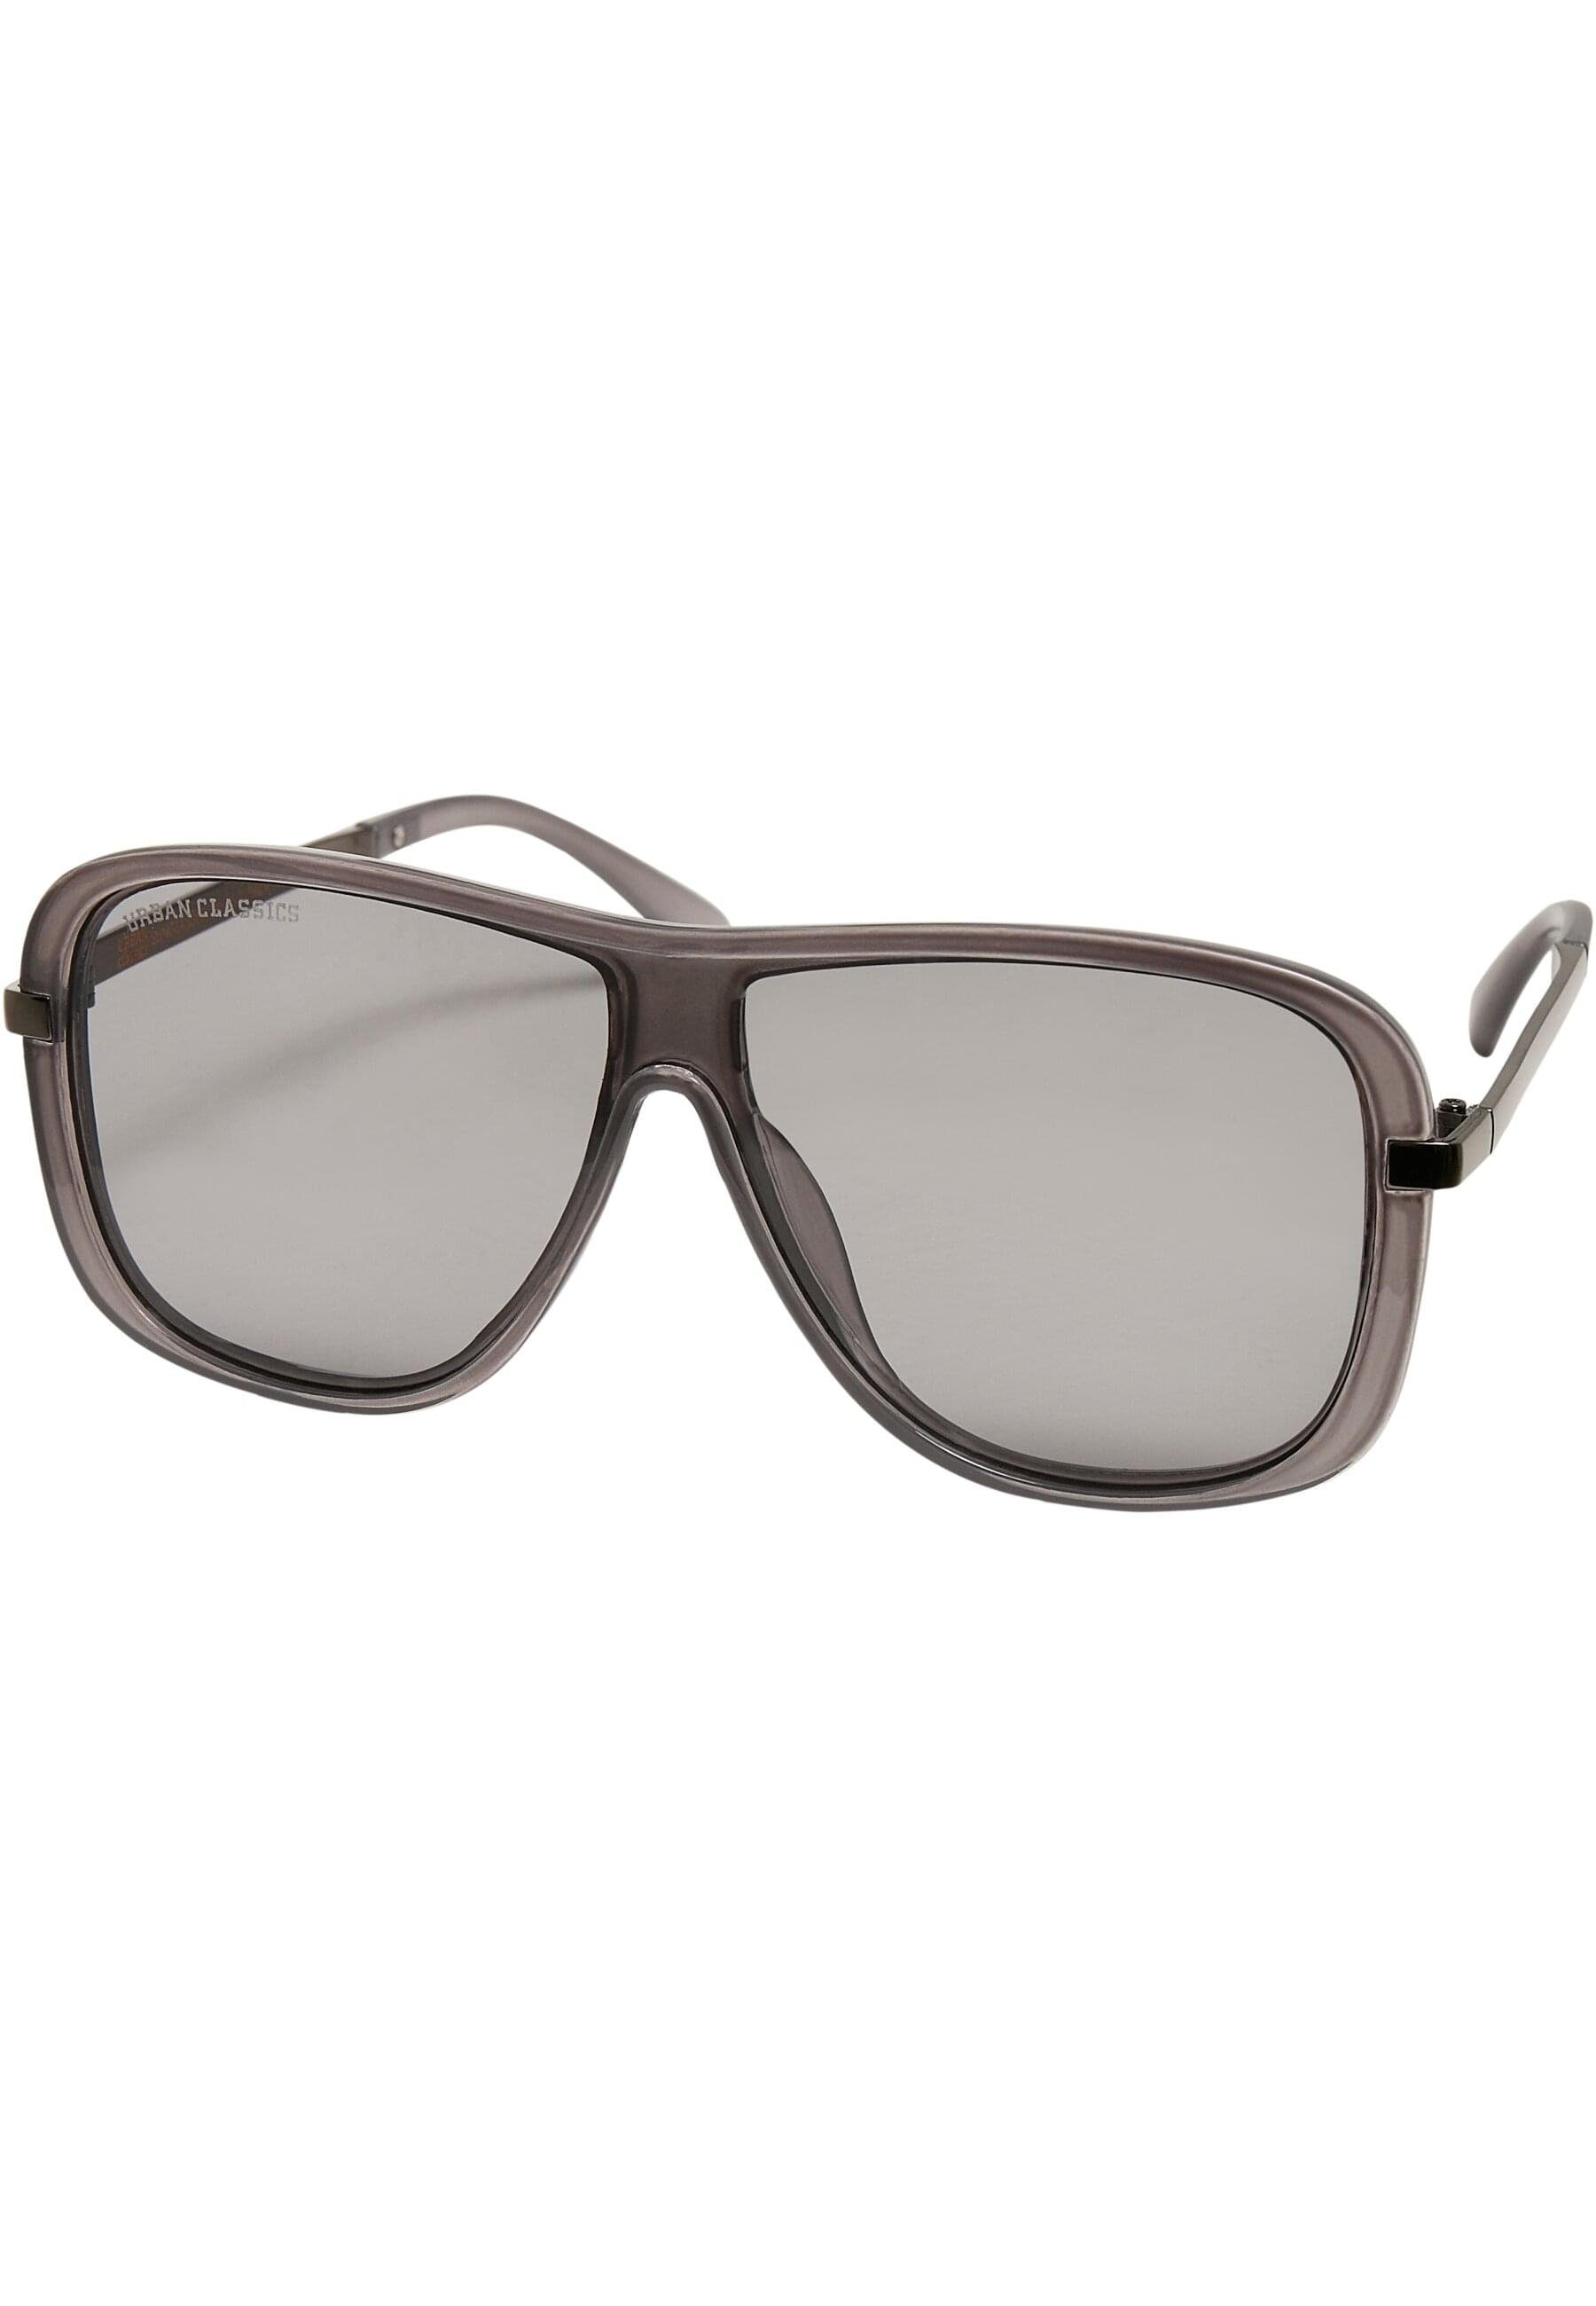 URBAN Sonnenbrille 2-Pack CLASSICS Sunglasses Milos Unisex